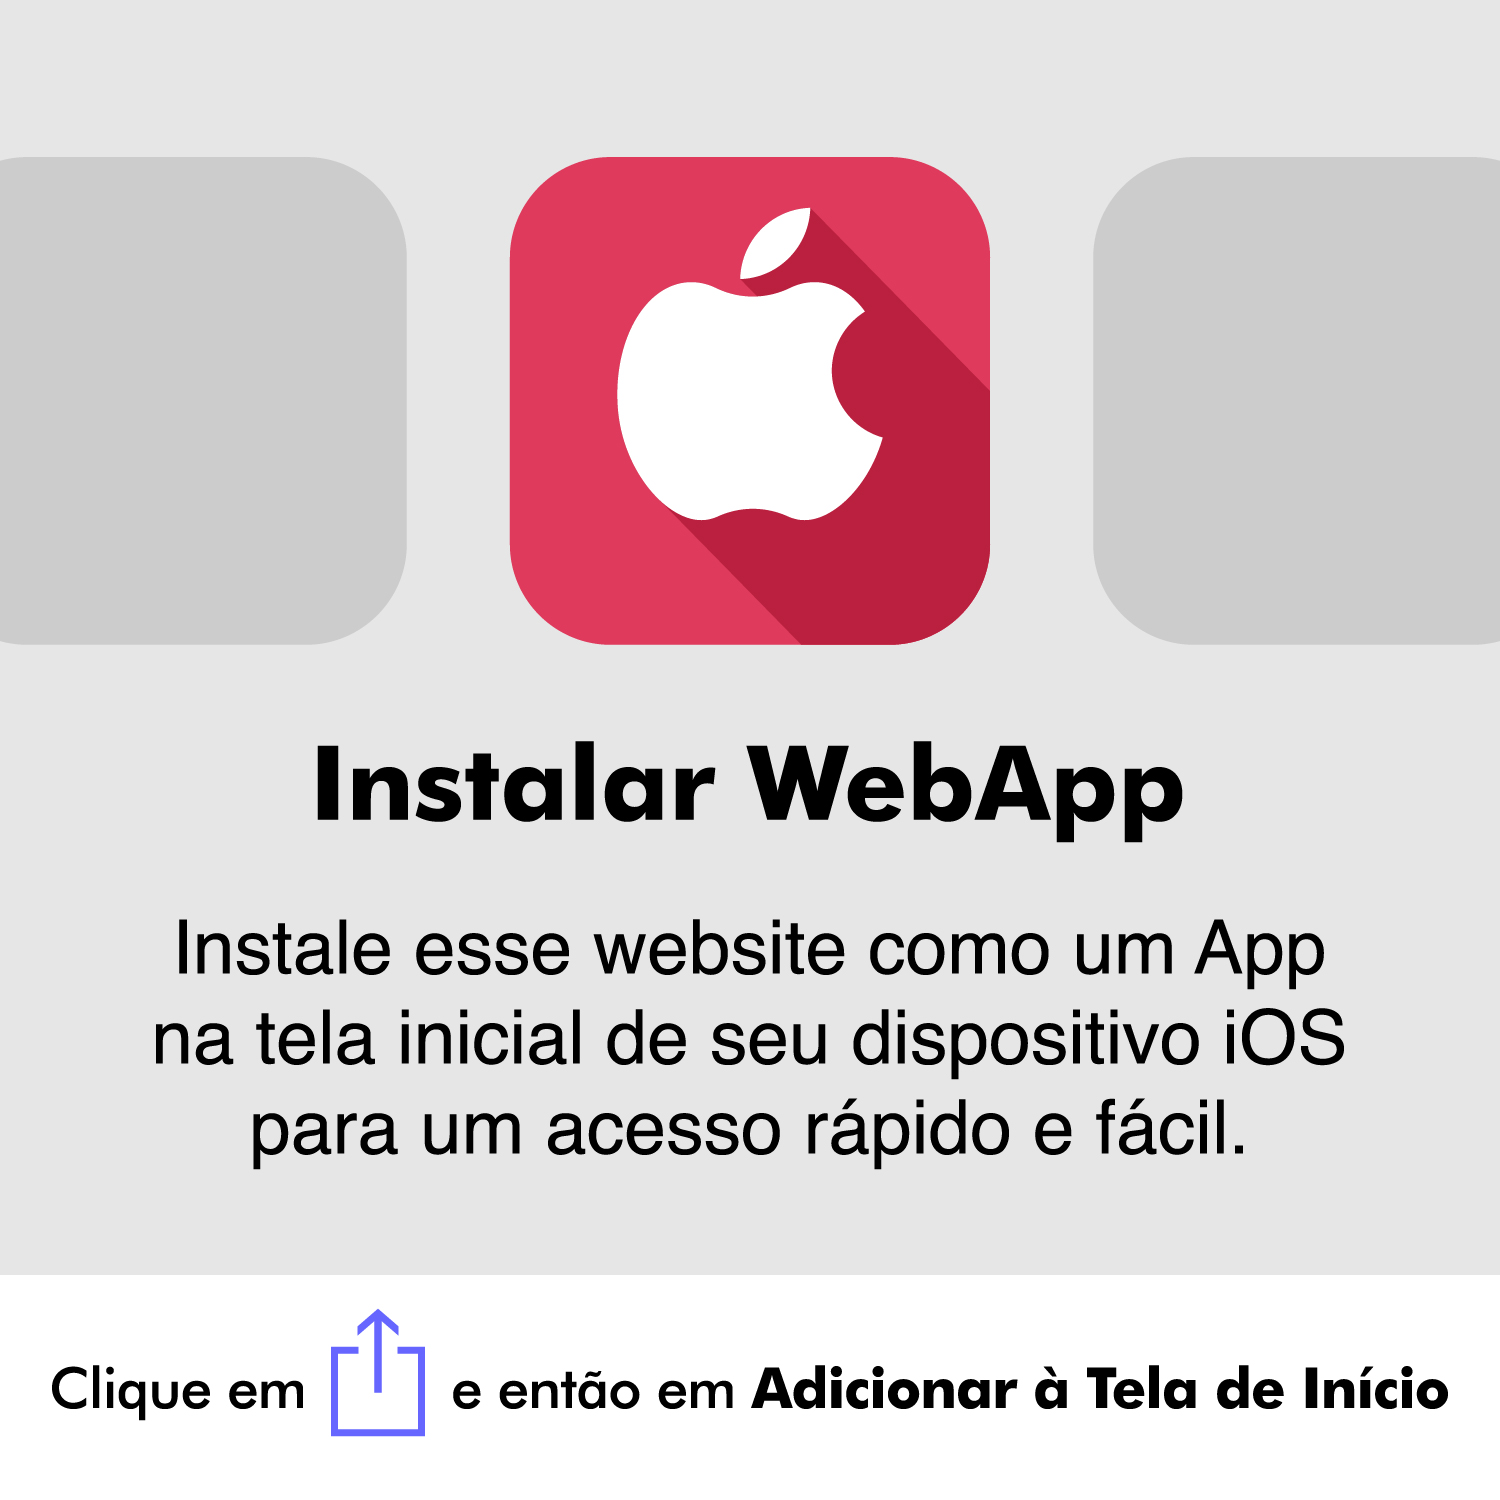 Instalar WebApp